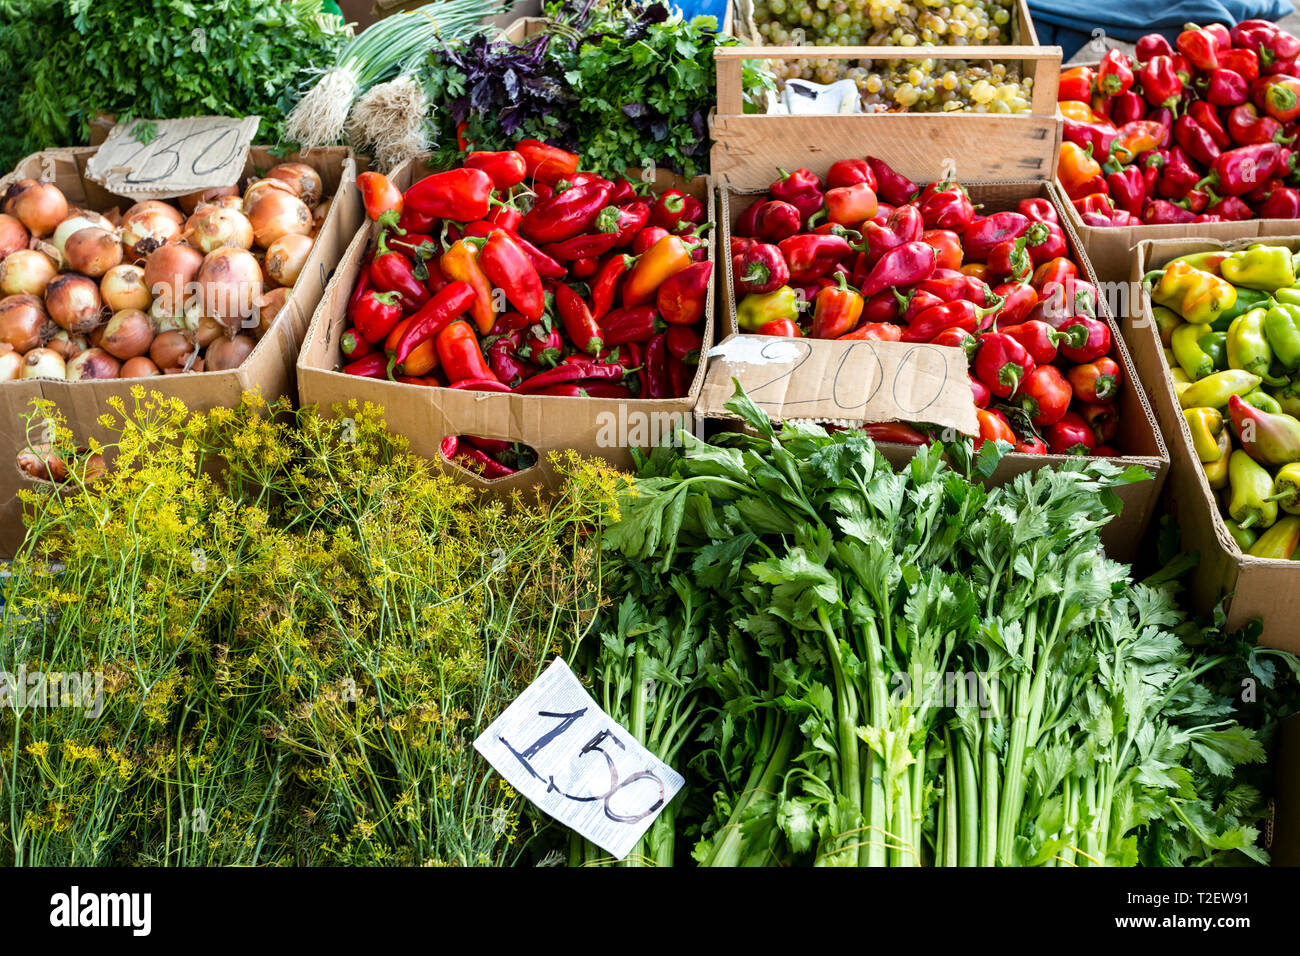 Bauern Lebensmittel Markt mit frischen, abwechslungsreichen, saisonalen, organisches Gemüse und Früchte. Bio Lebensmittel für gesundes Leben. Bauernhof Gemüse und viel Grün in der Box. Stockfoto